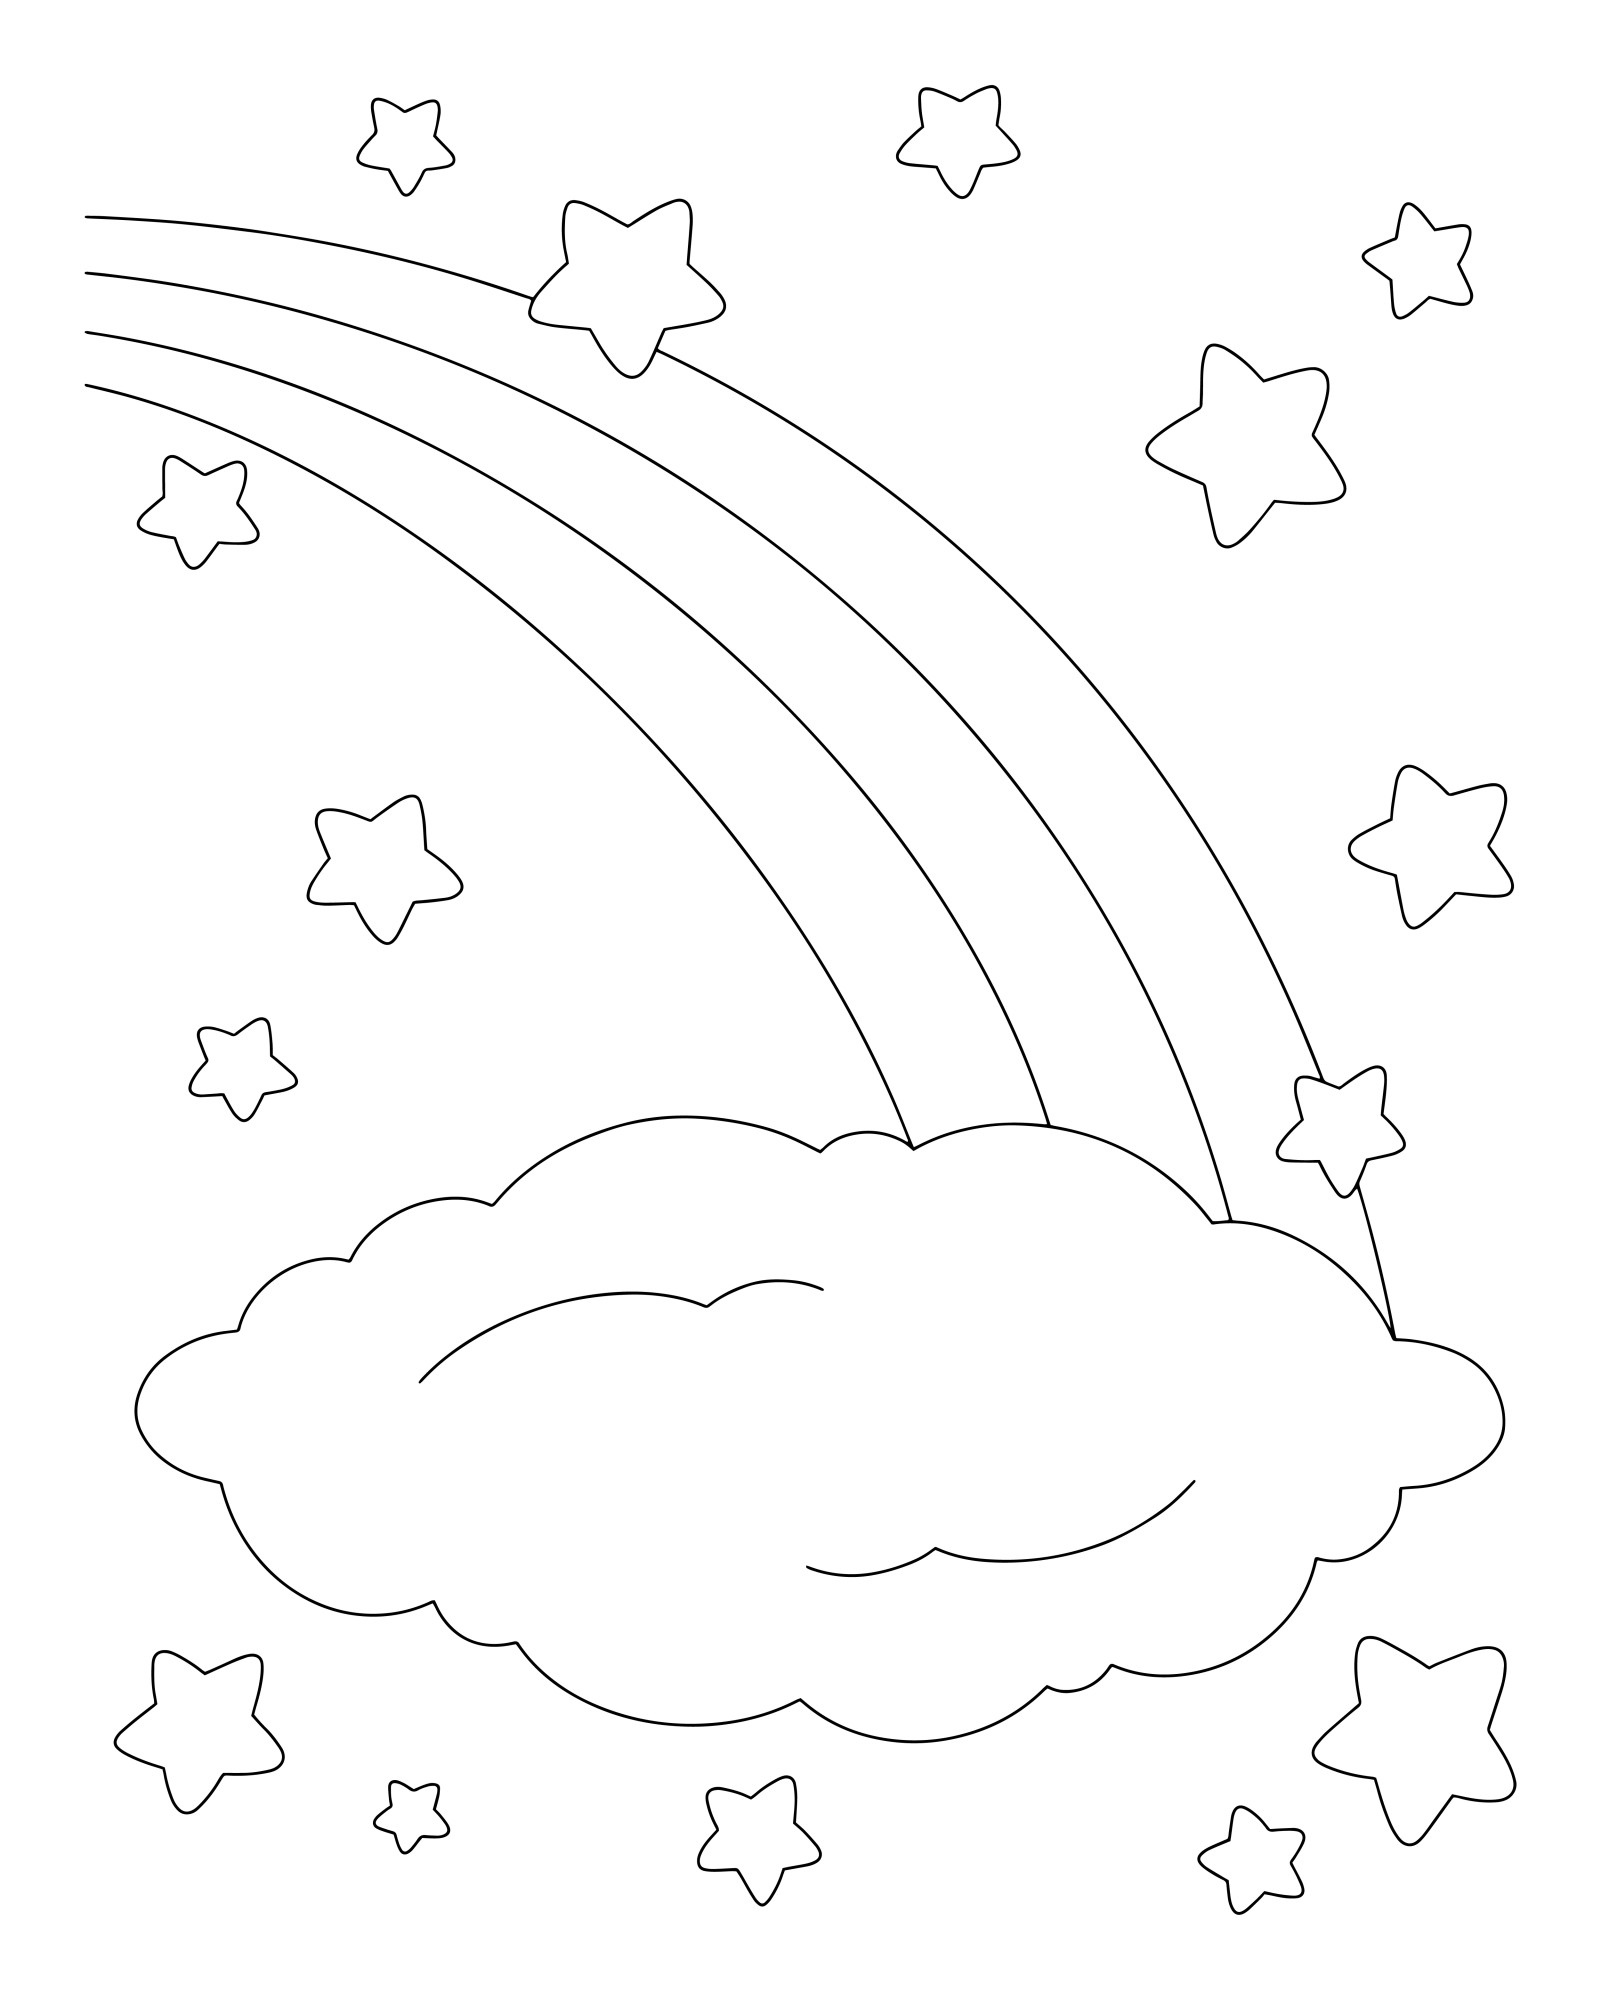 Раскраска для детей: радуга и облачко на фоне звезд